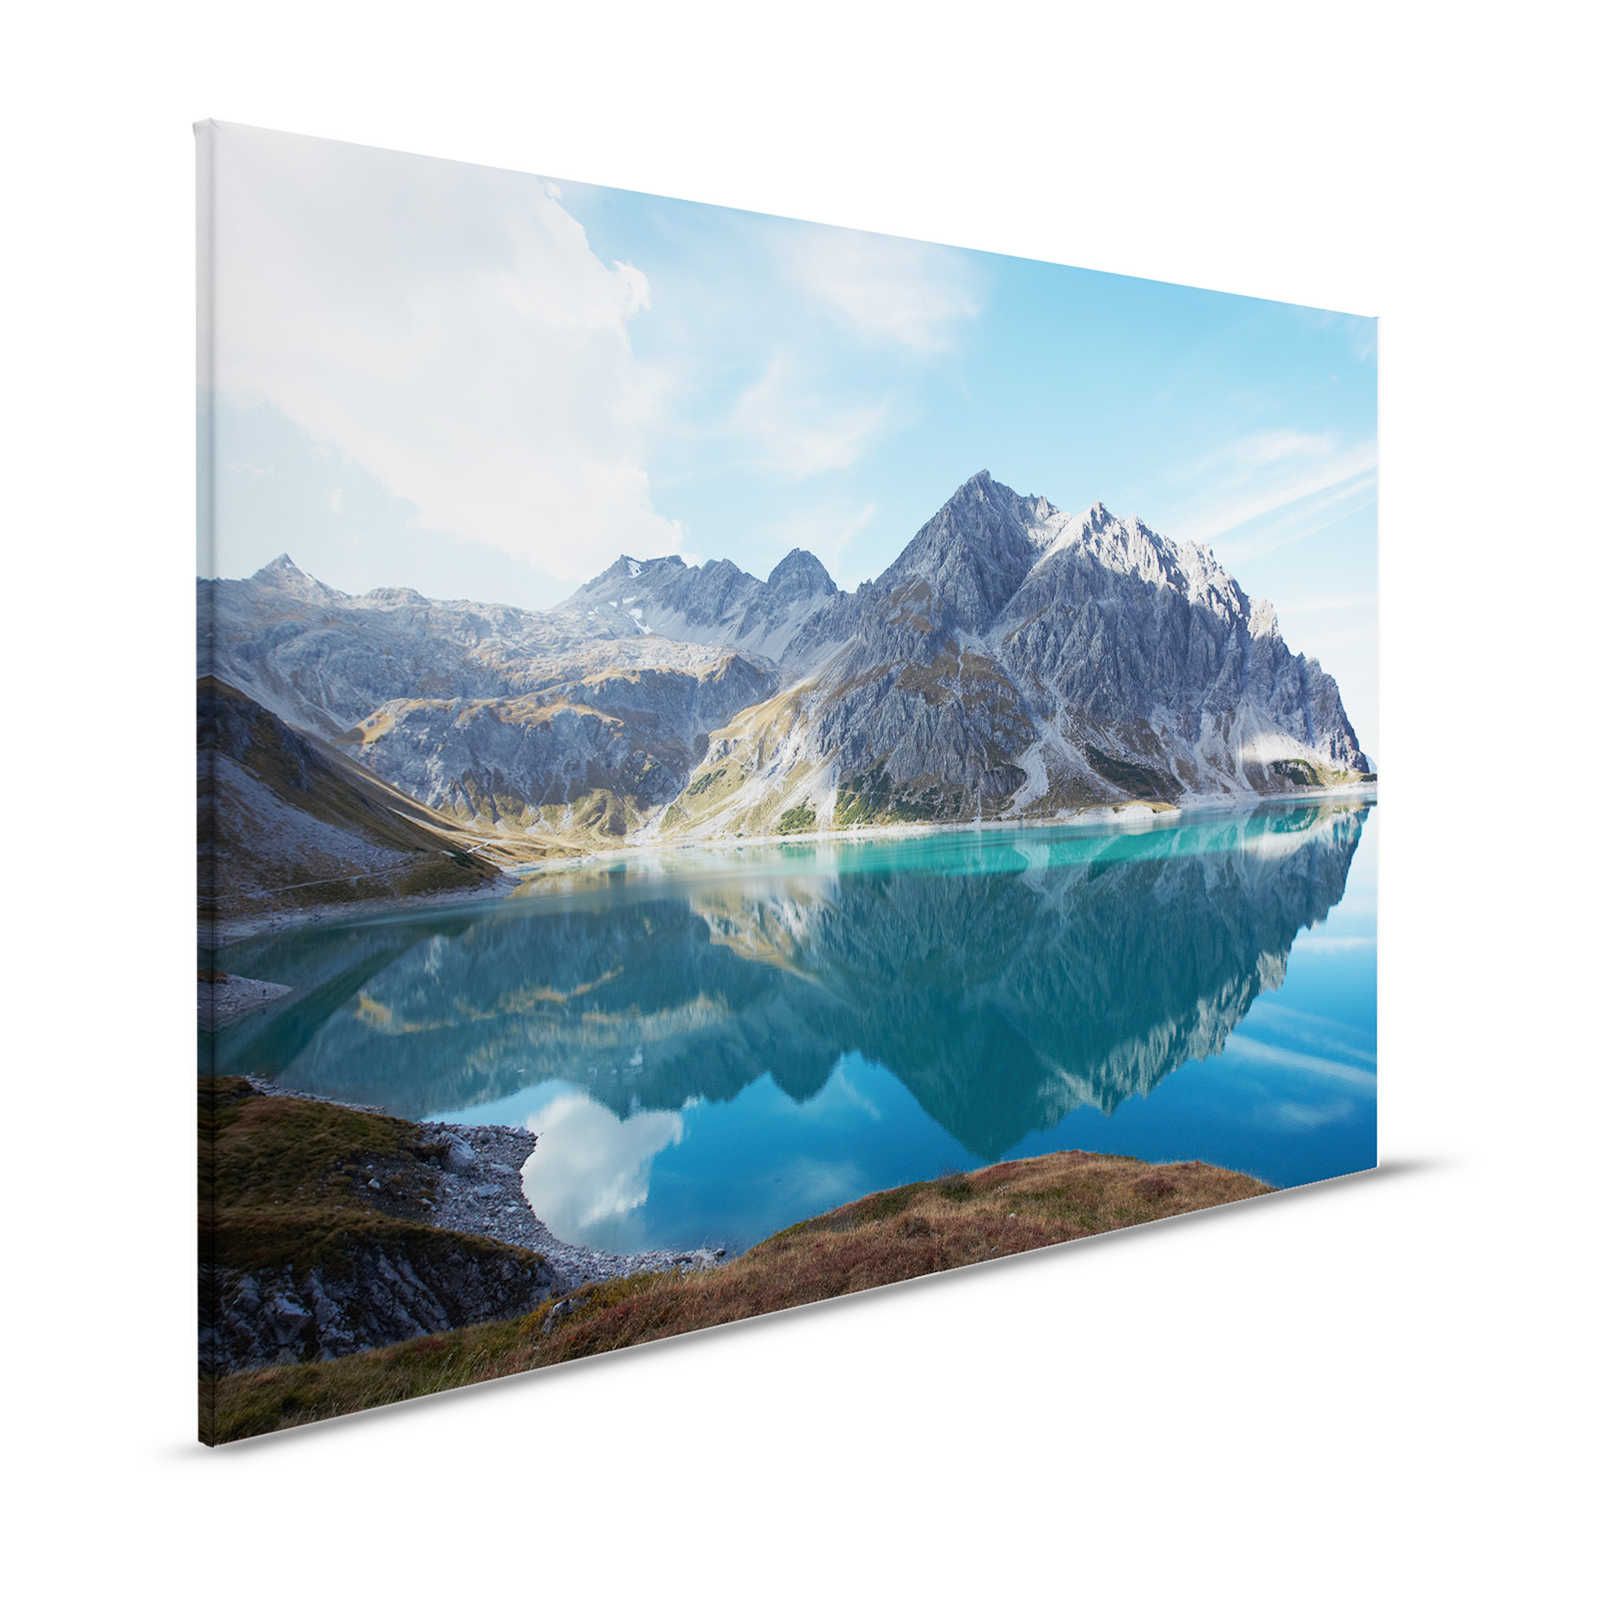 Lago di montagna Clear - Quadro su tela Natura Panorama Lago di montagna Idillio - 1,20 m x 0,80 m
